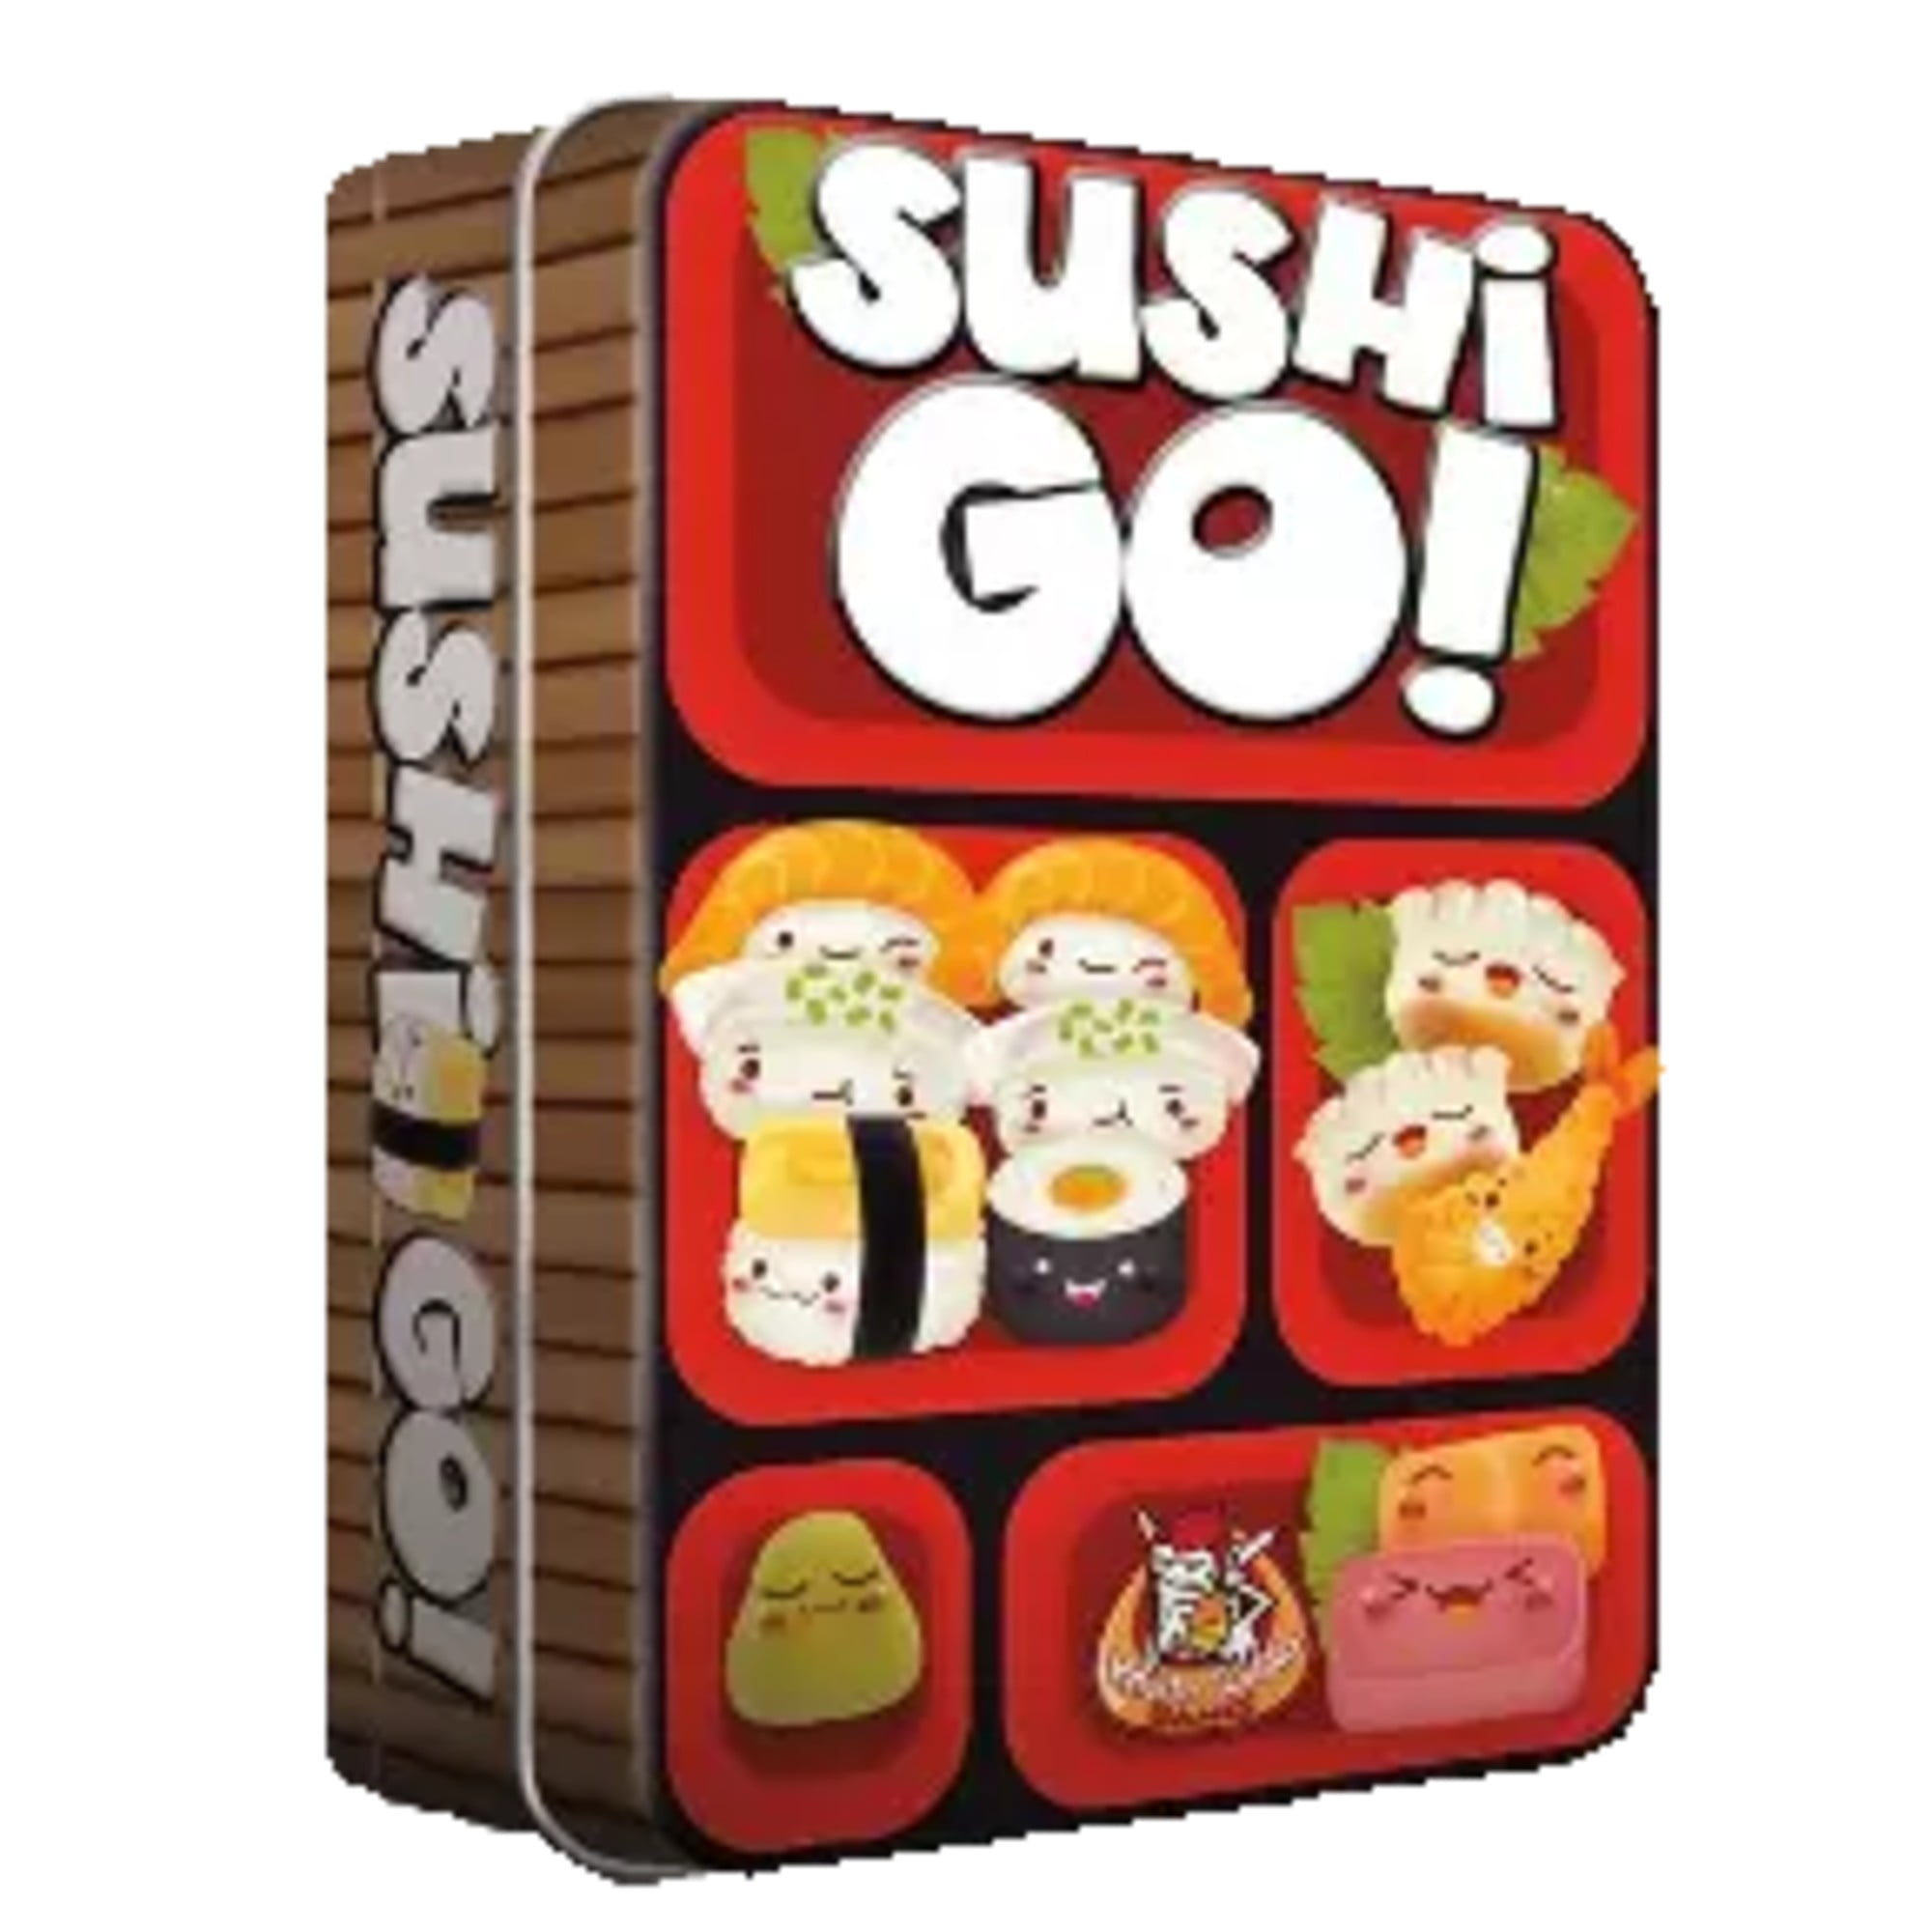 Sushi Go! 